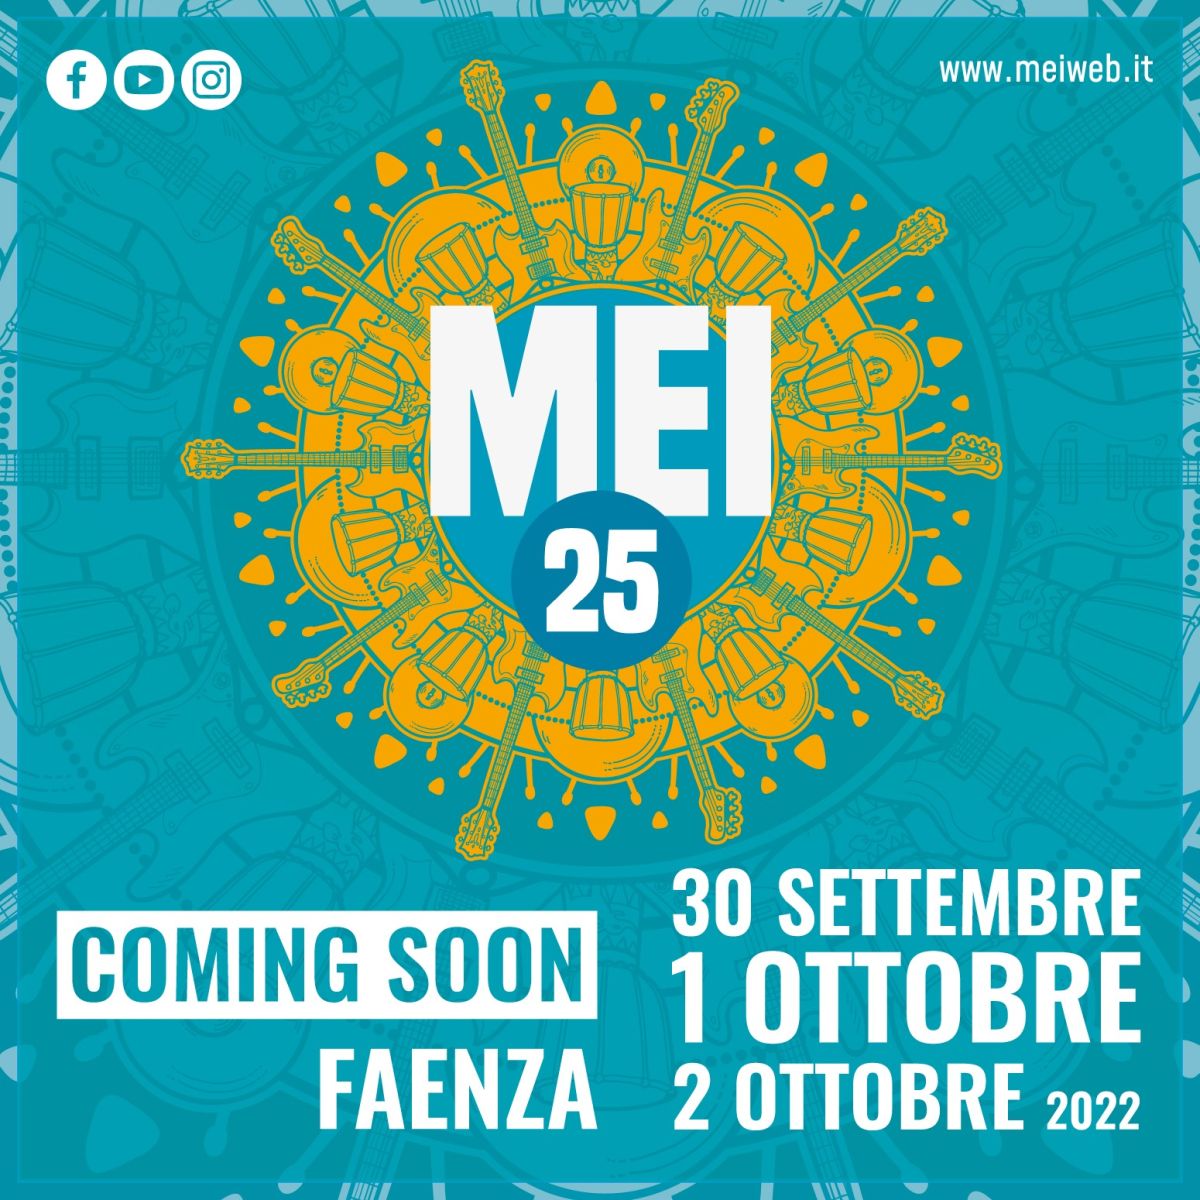 Mei, tre giorni densissimi a Faenza per l’edizione 2022 del meeting